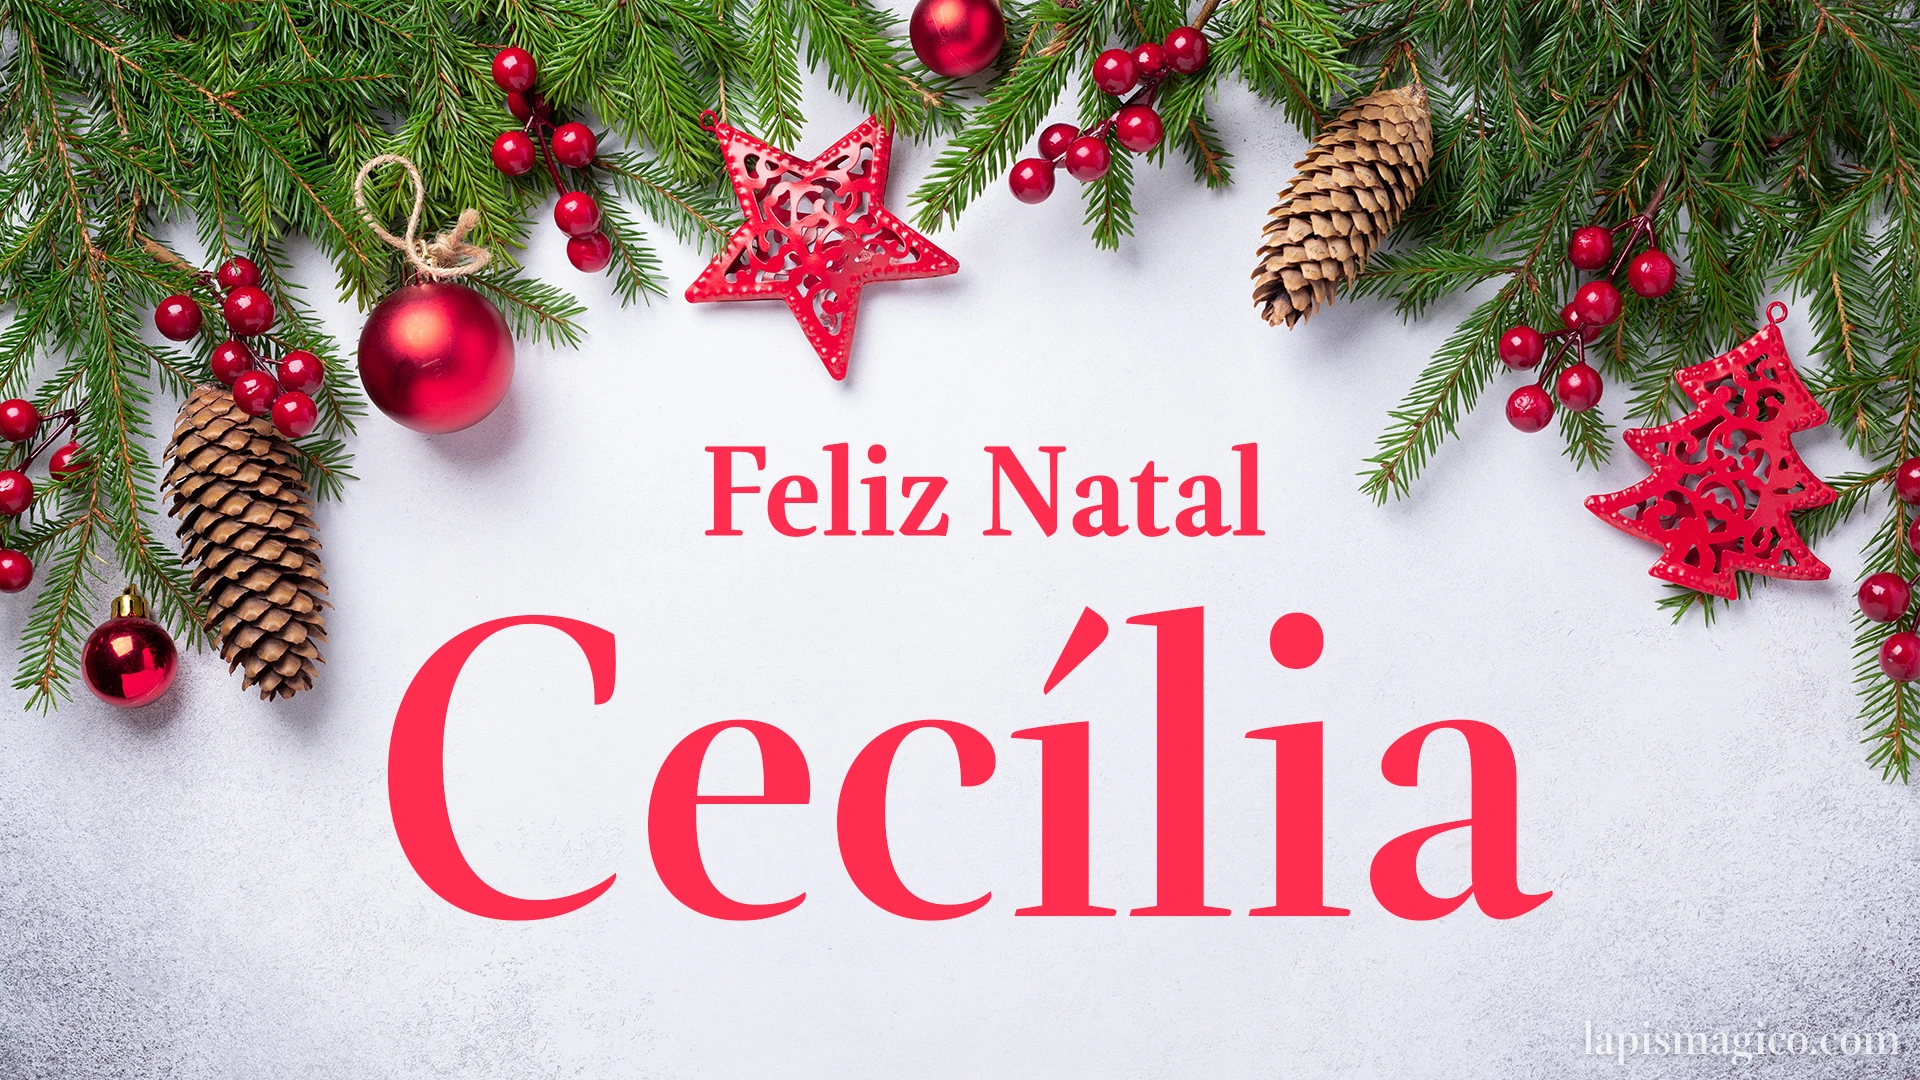 Oh Cecília, cinco postais de Feliz Natal Postal com o teu nome